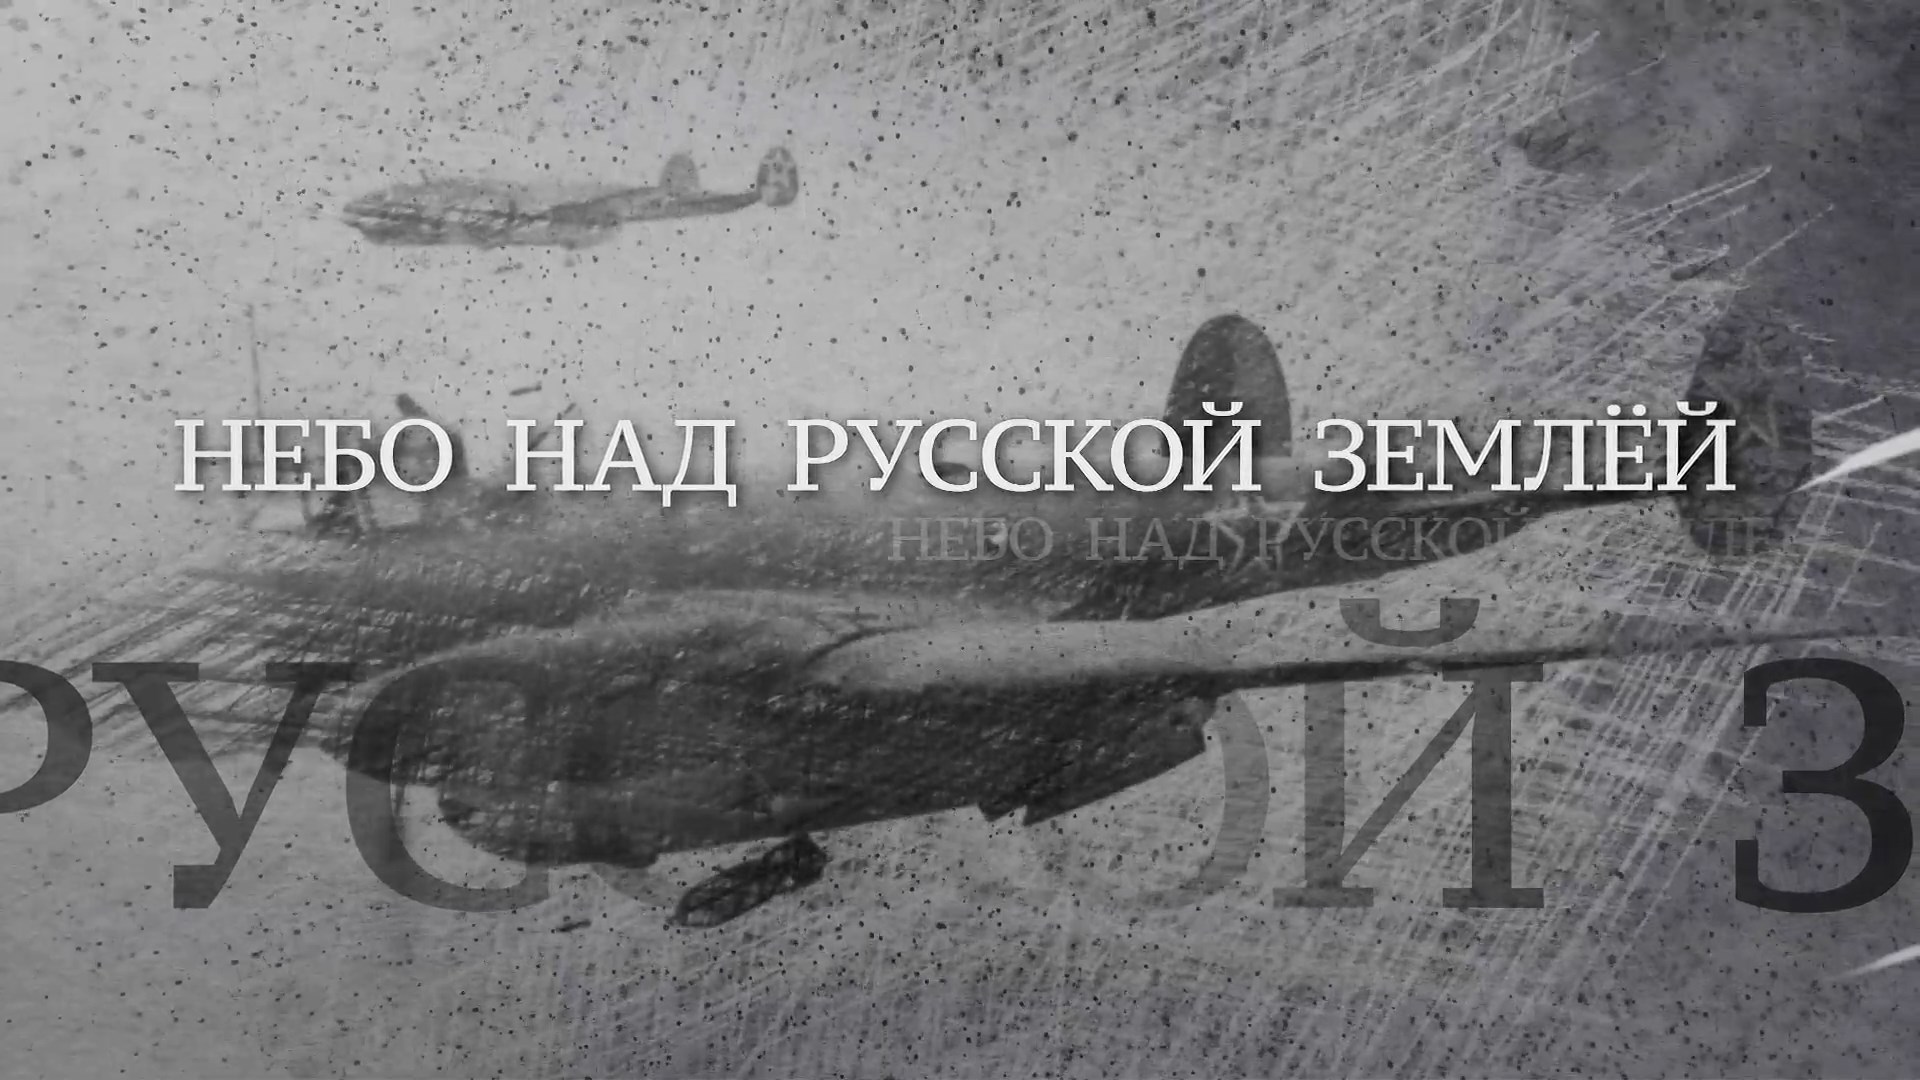 Сериал Вечная Отечественная. 05 Небо над Русской землёй